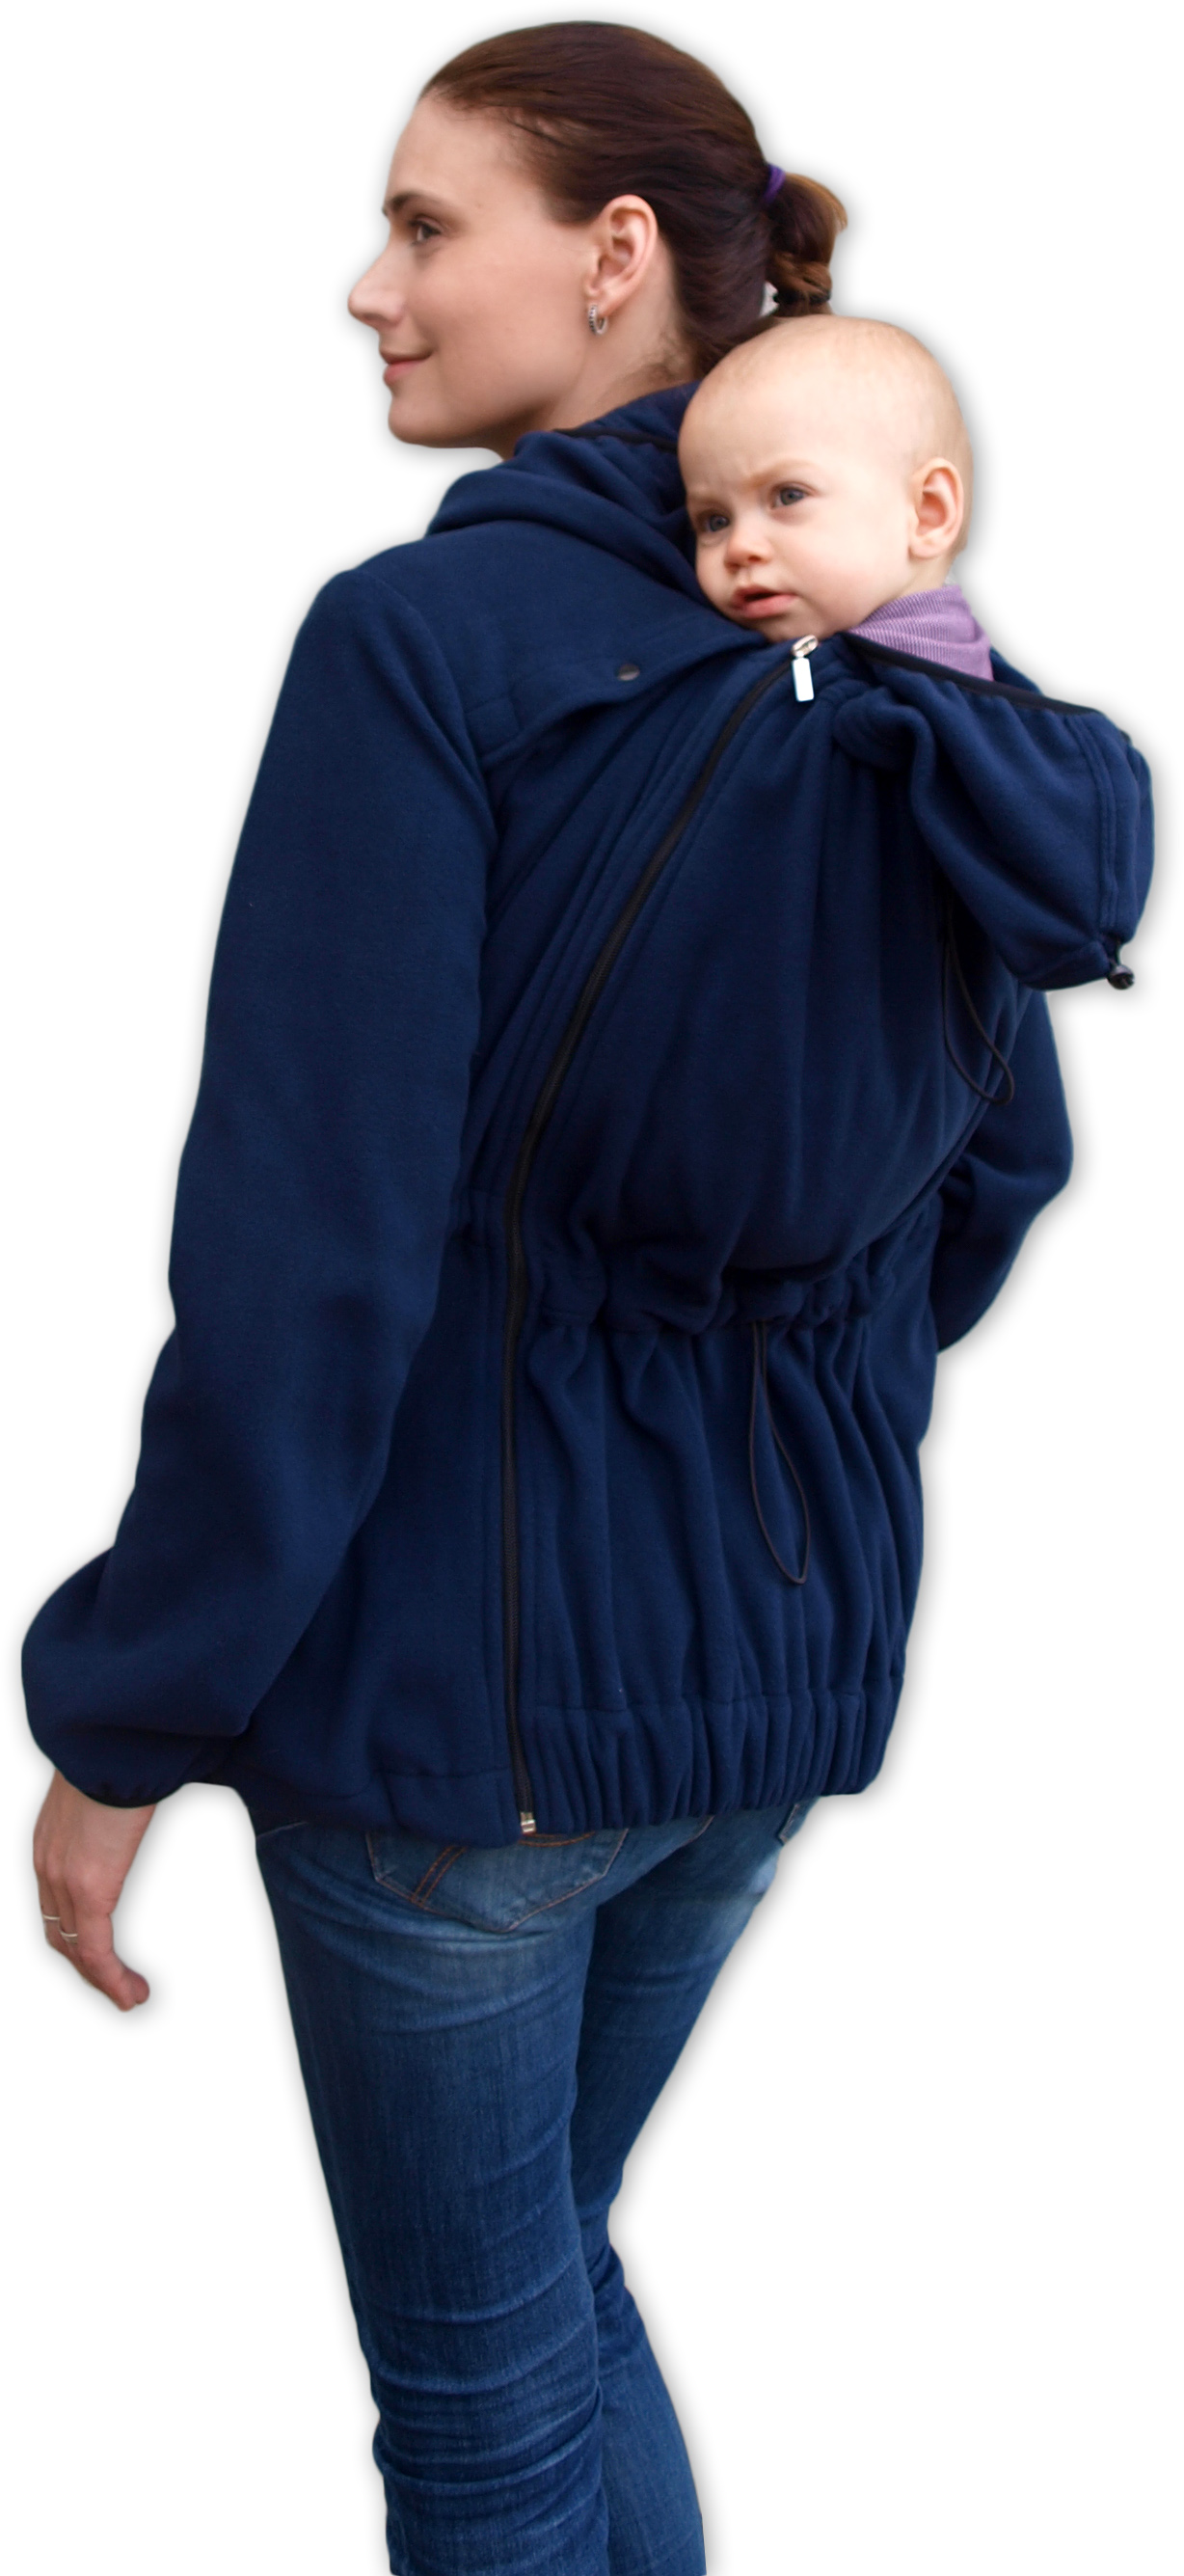 Tragesweatshirt für vorderes/hinteres Tragen Nela, dunkelblau